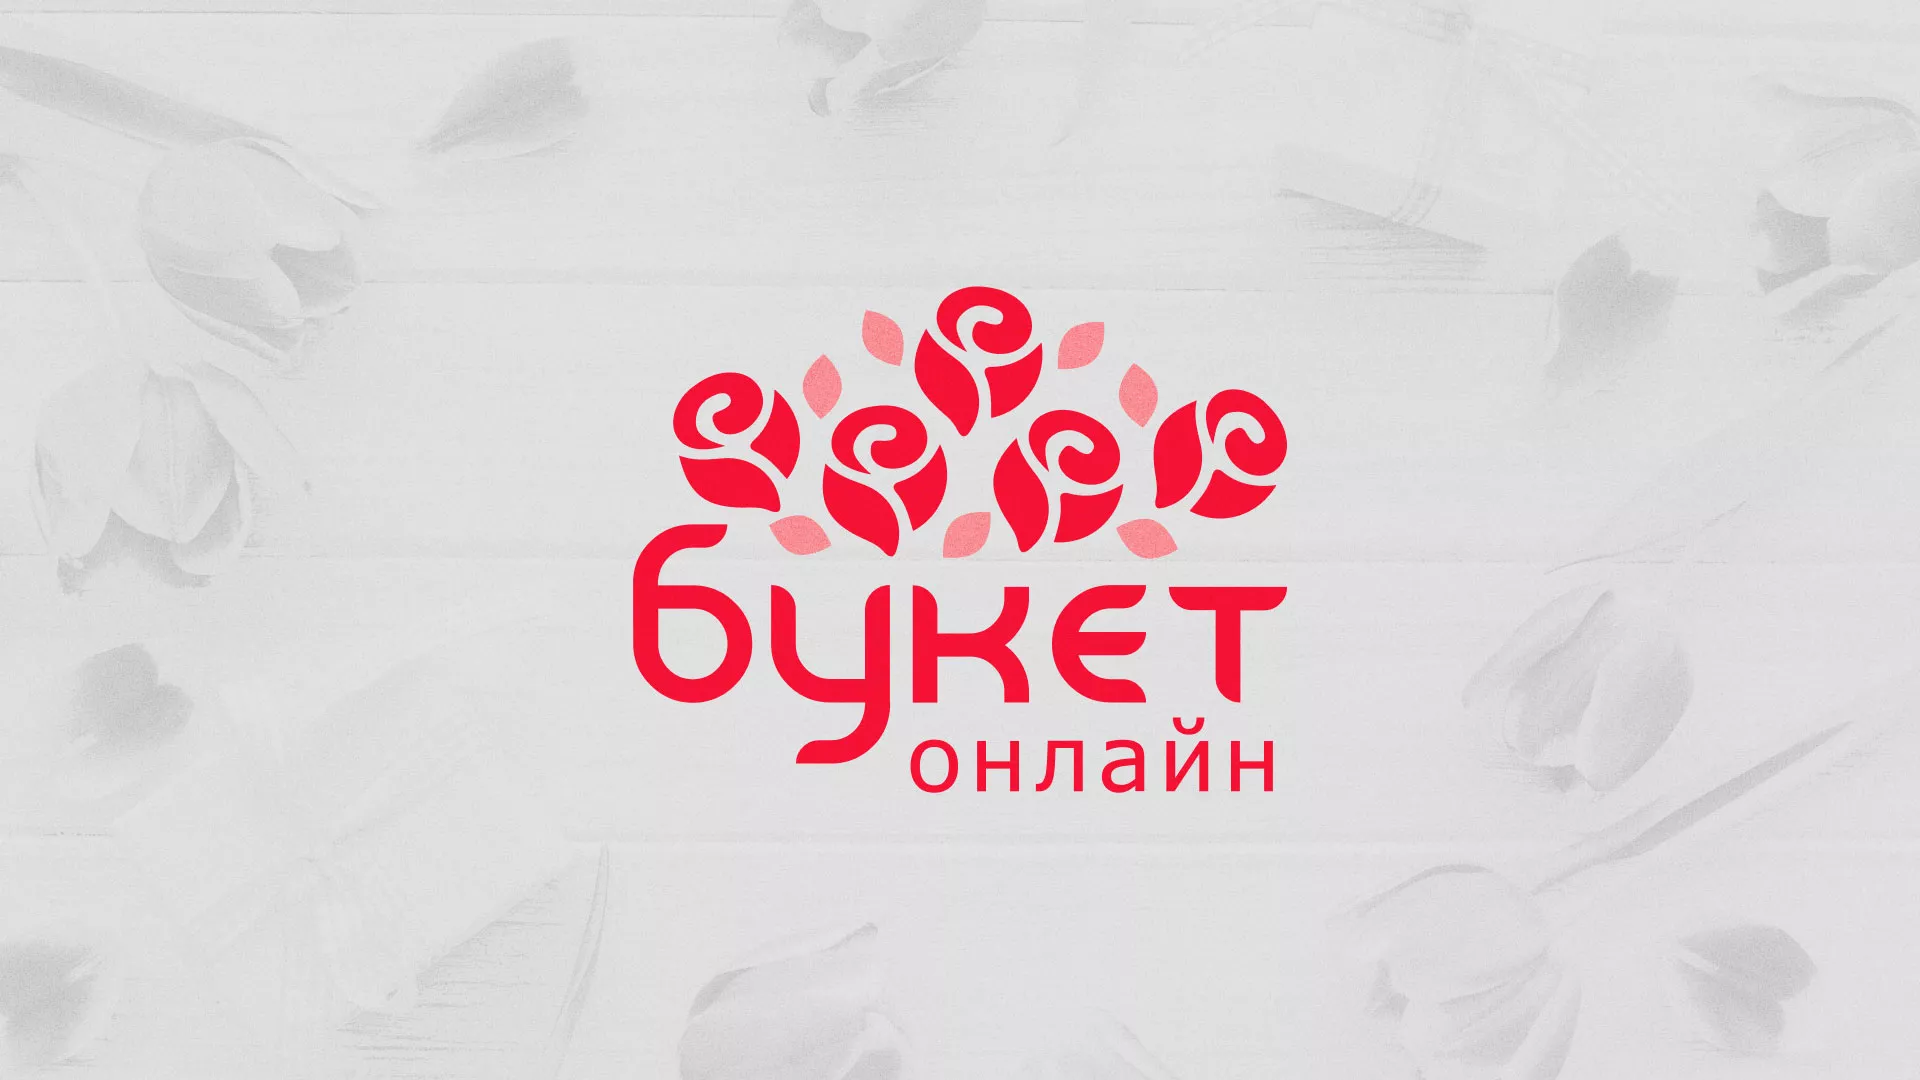 Создание интернет-магазина «Букет-онлайн» по цветам в Воркуте